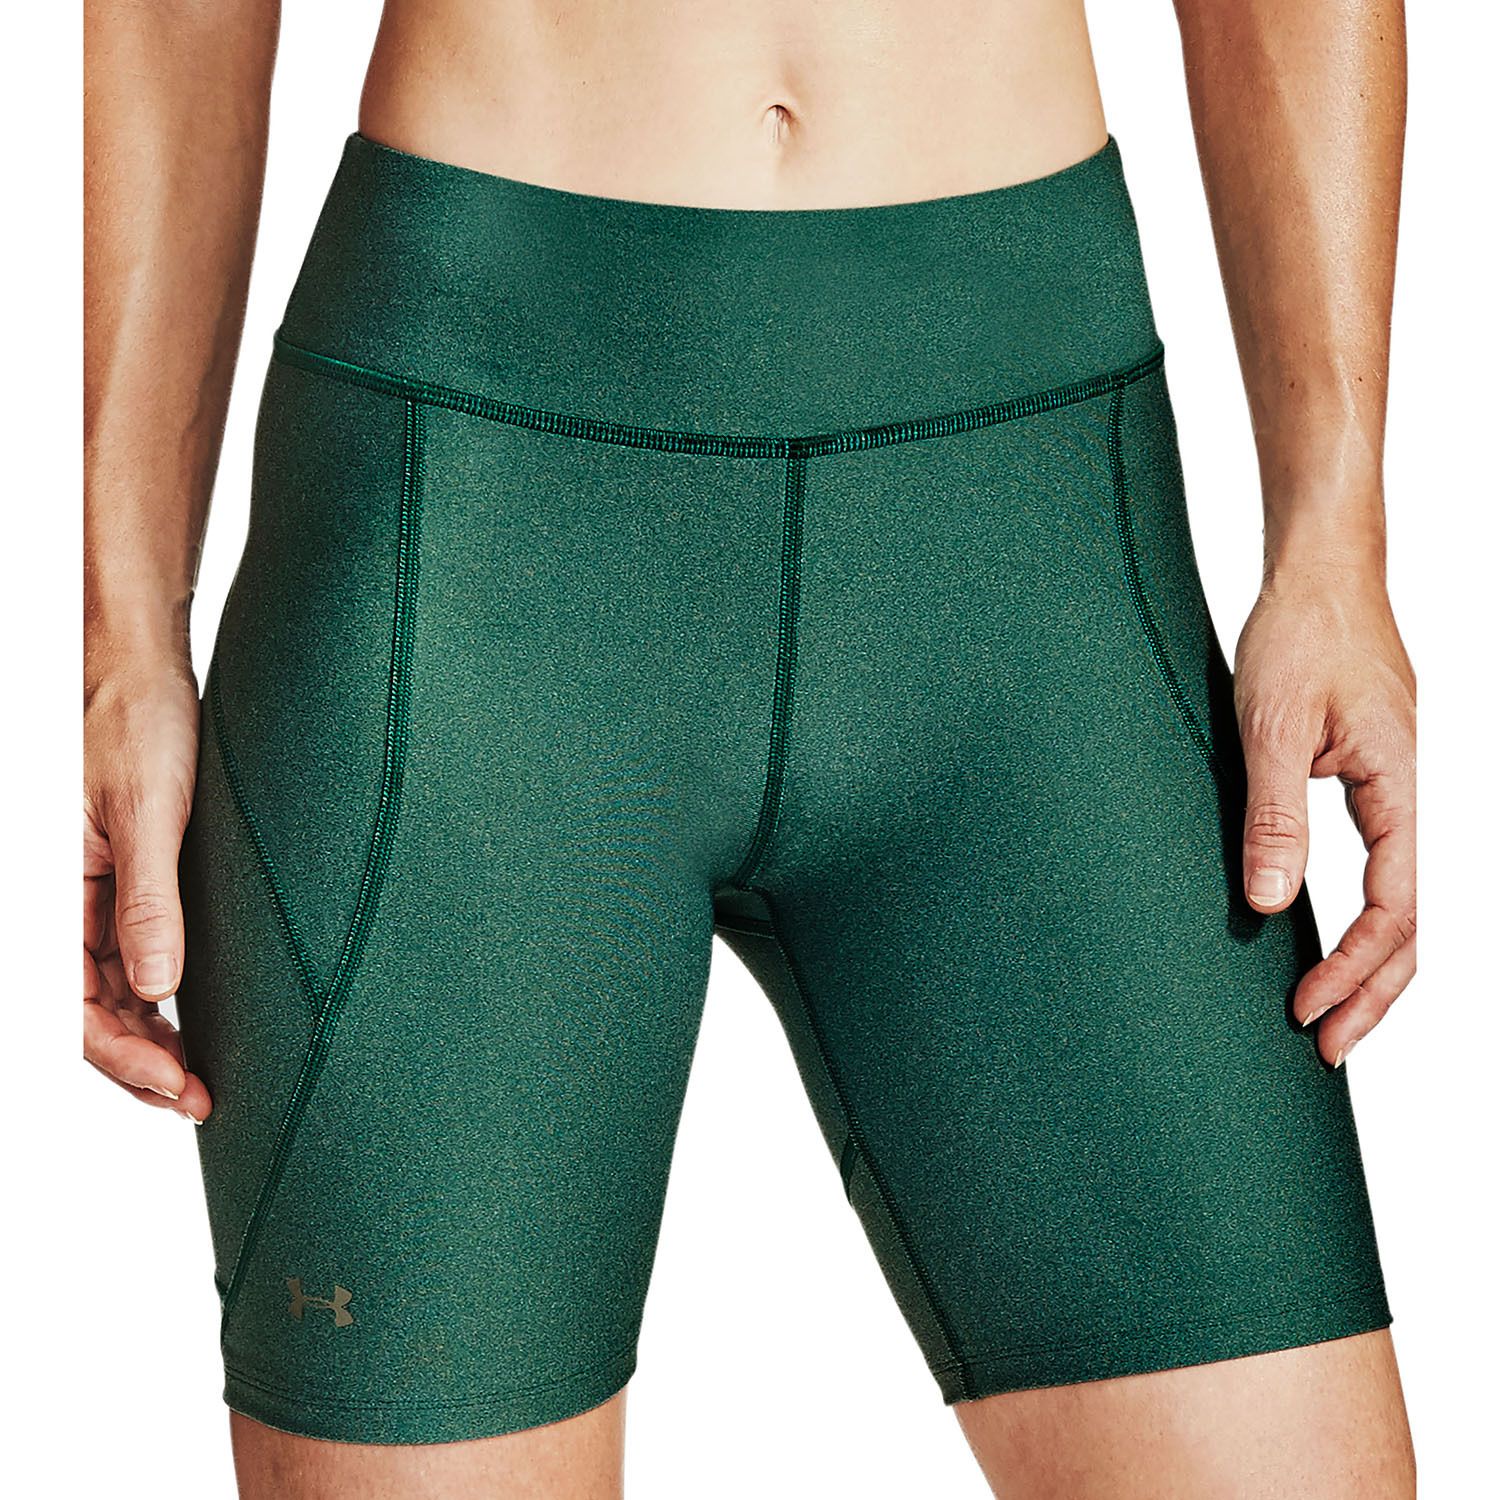 green bicycle shorts